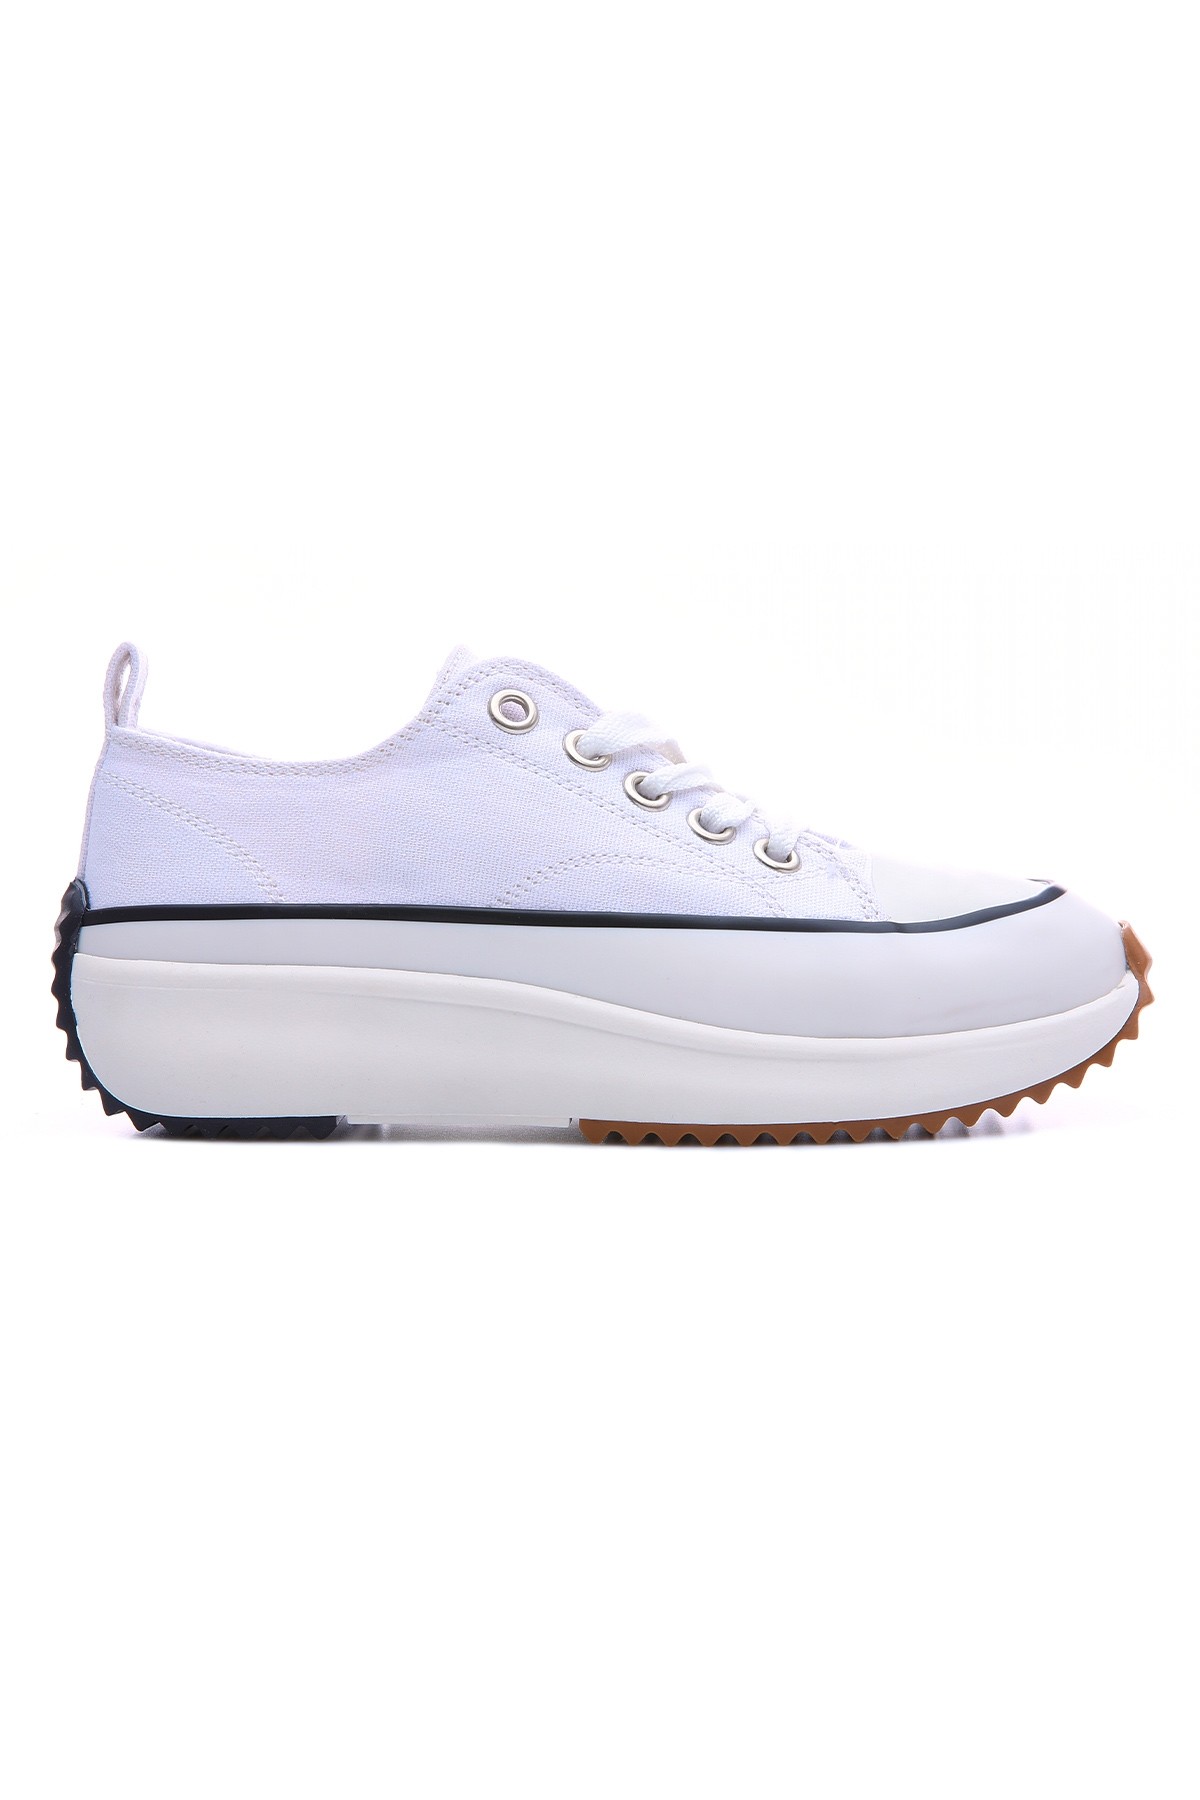 TommyLife - Beyaz Bağcıklı Yüksek Taban Günlük Kadın Spor Ayakkabı - 89070